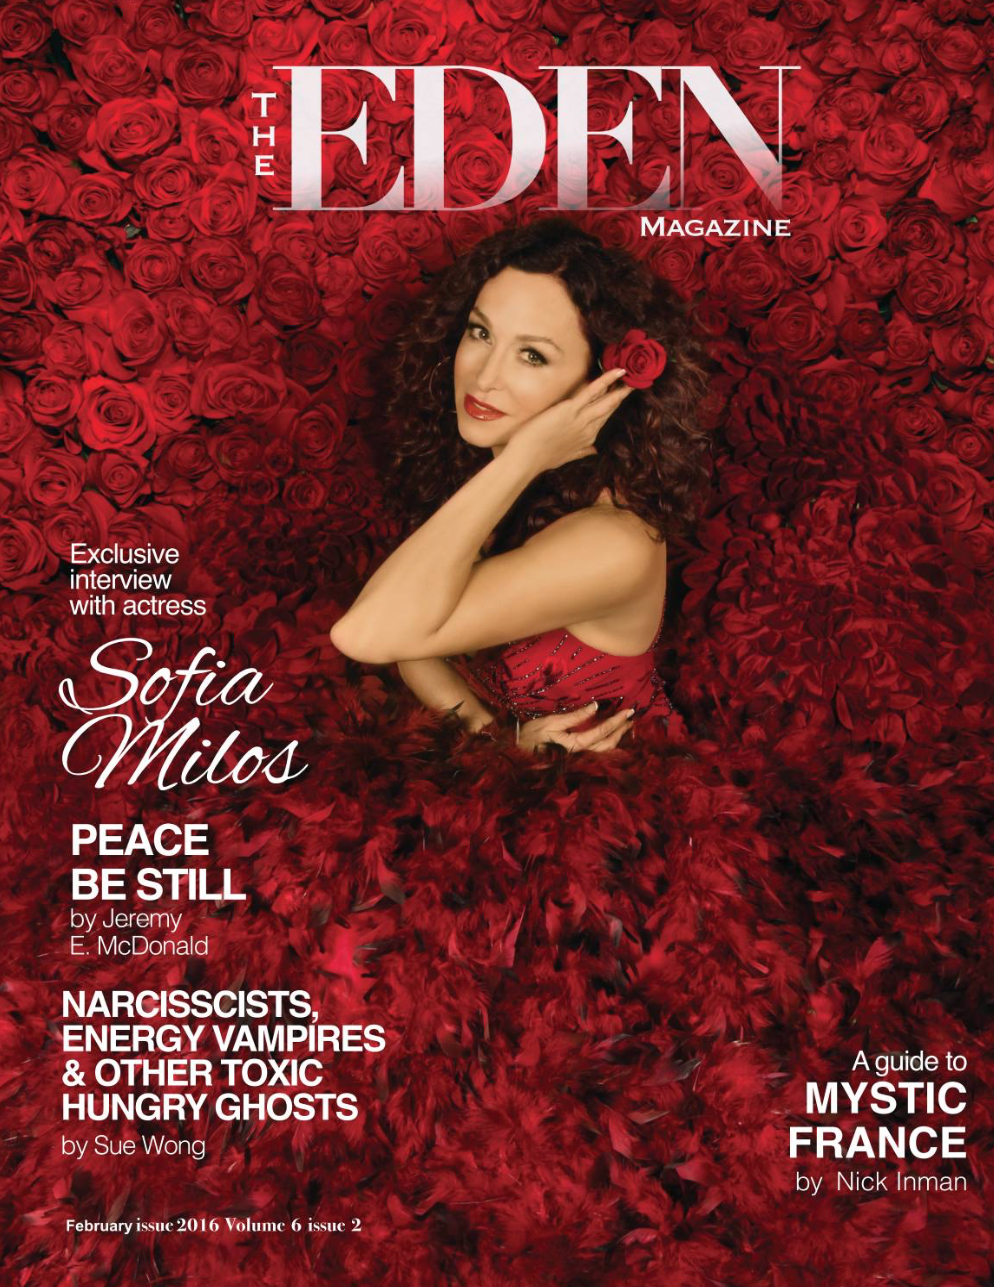 New Eden Magazine